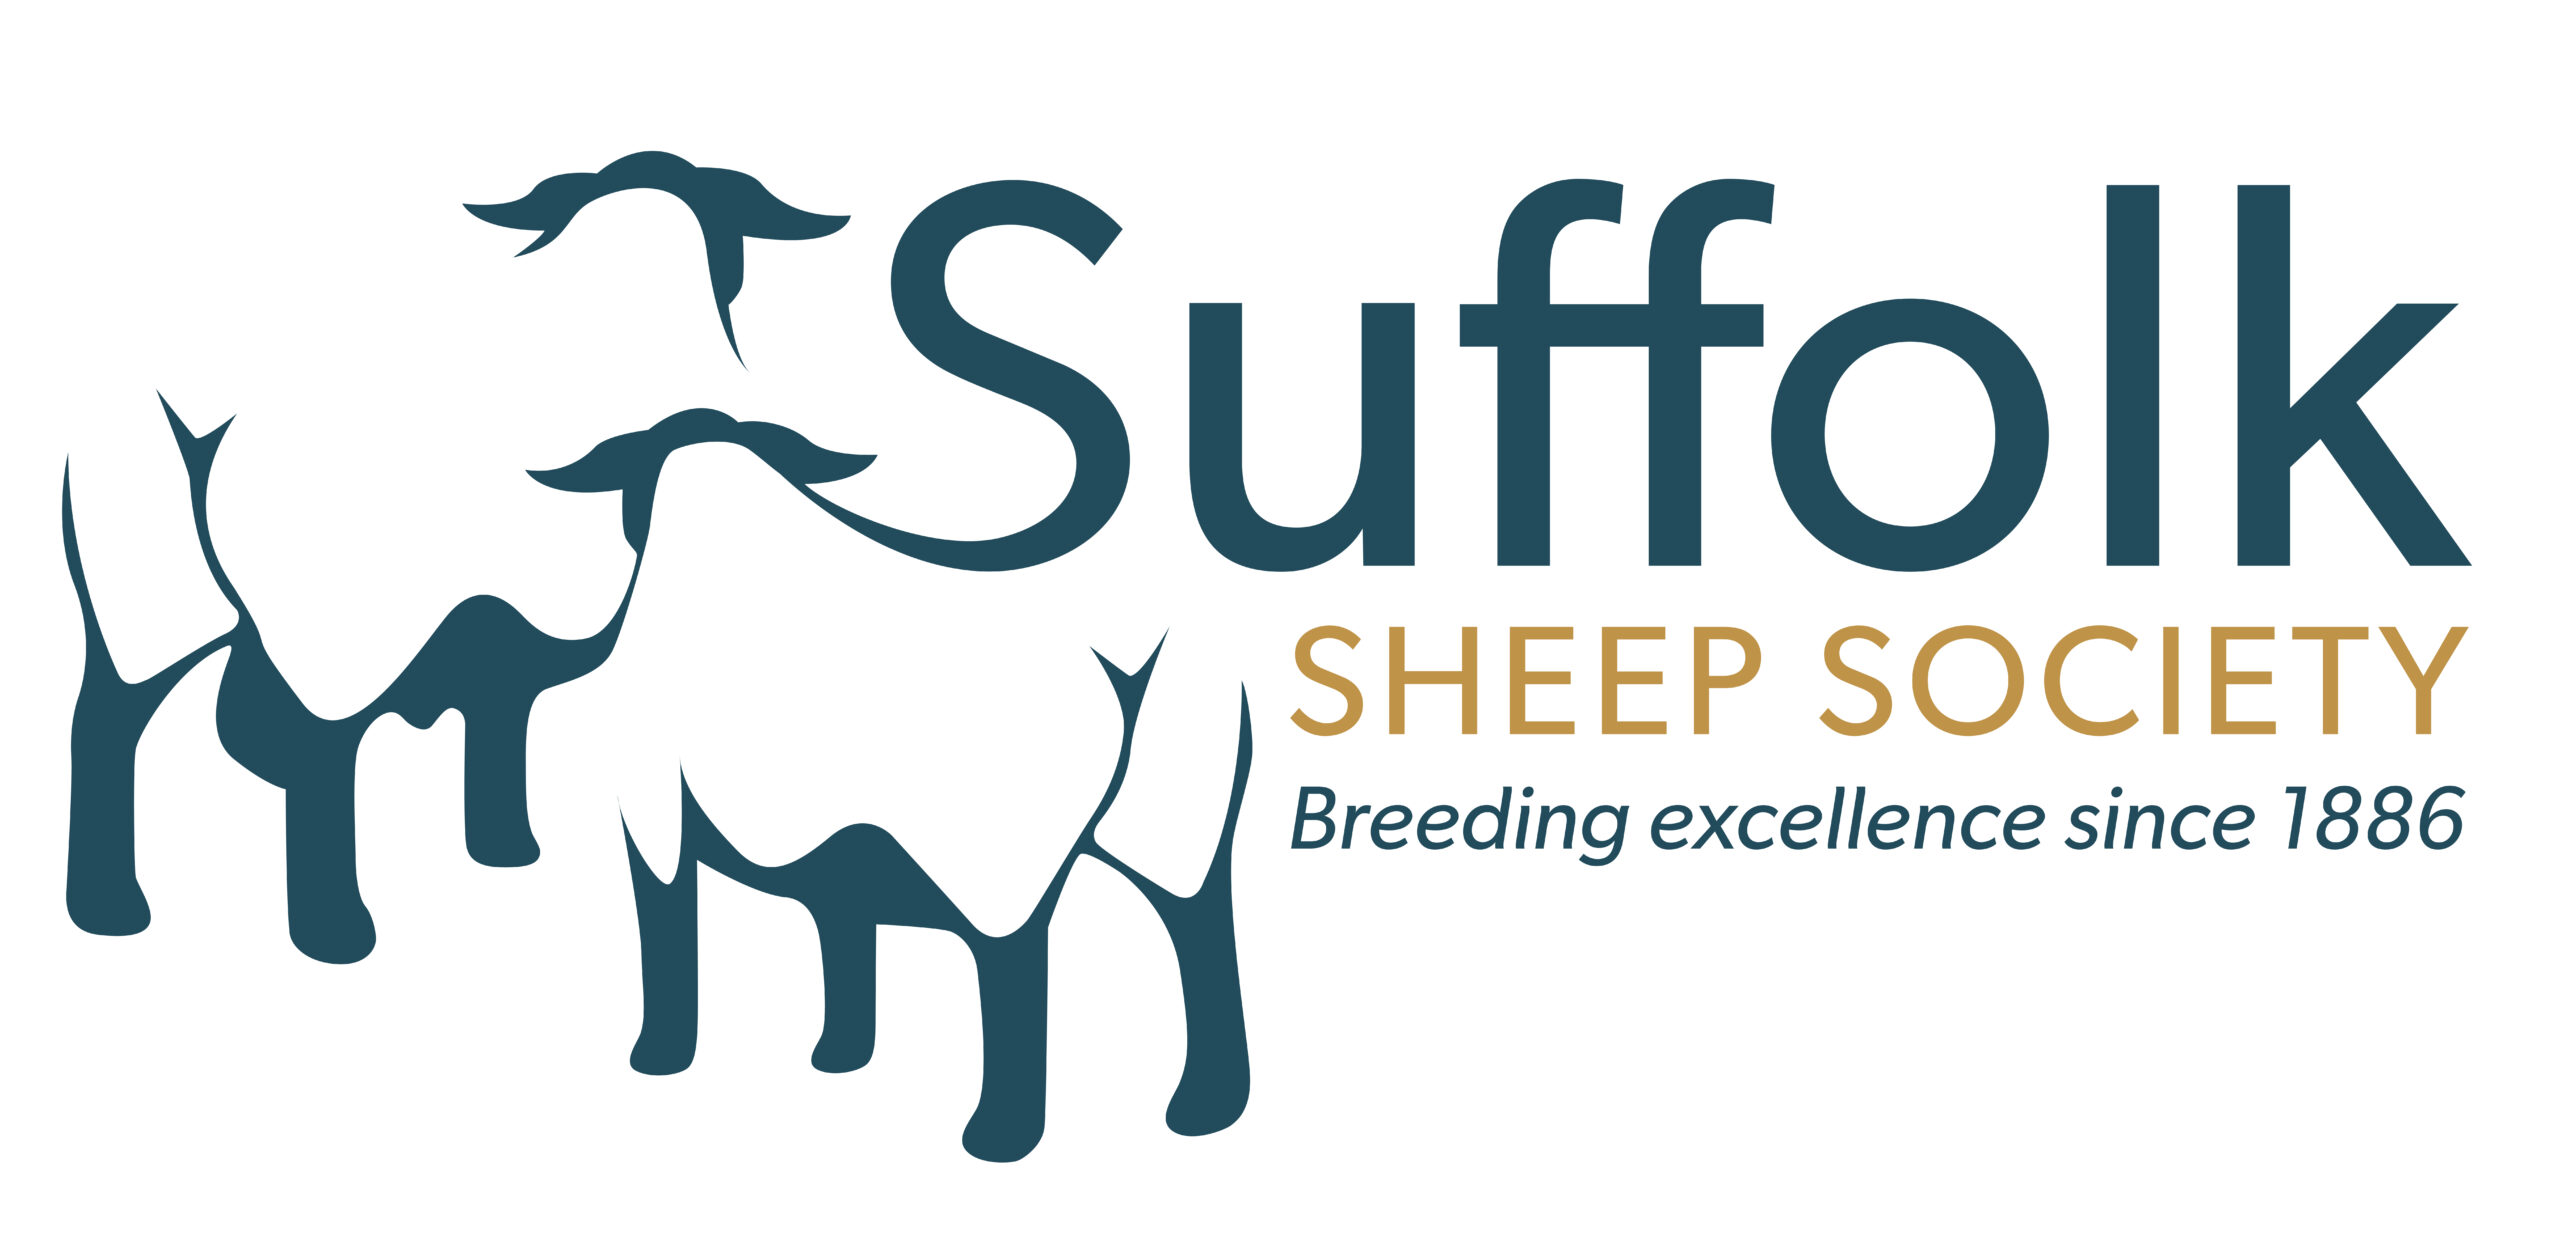 Suffolk Sheep Society